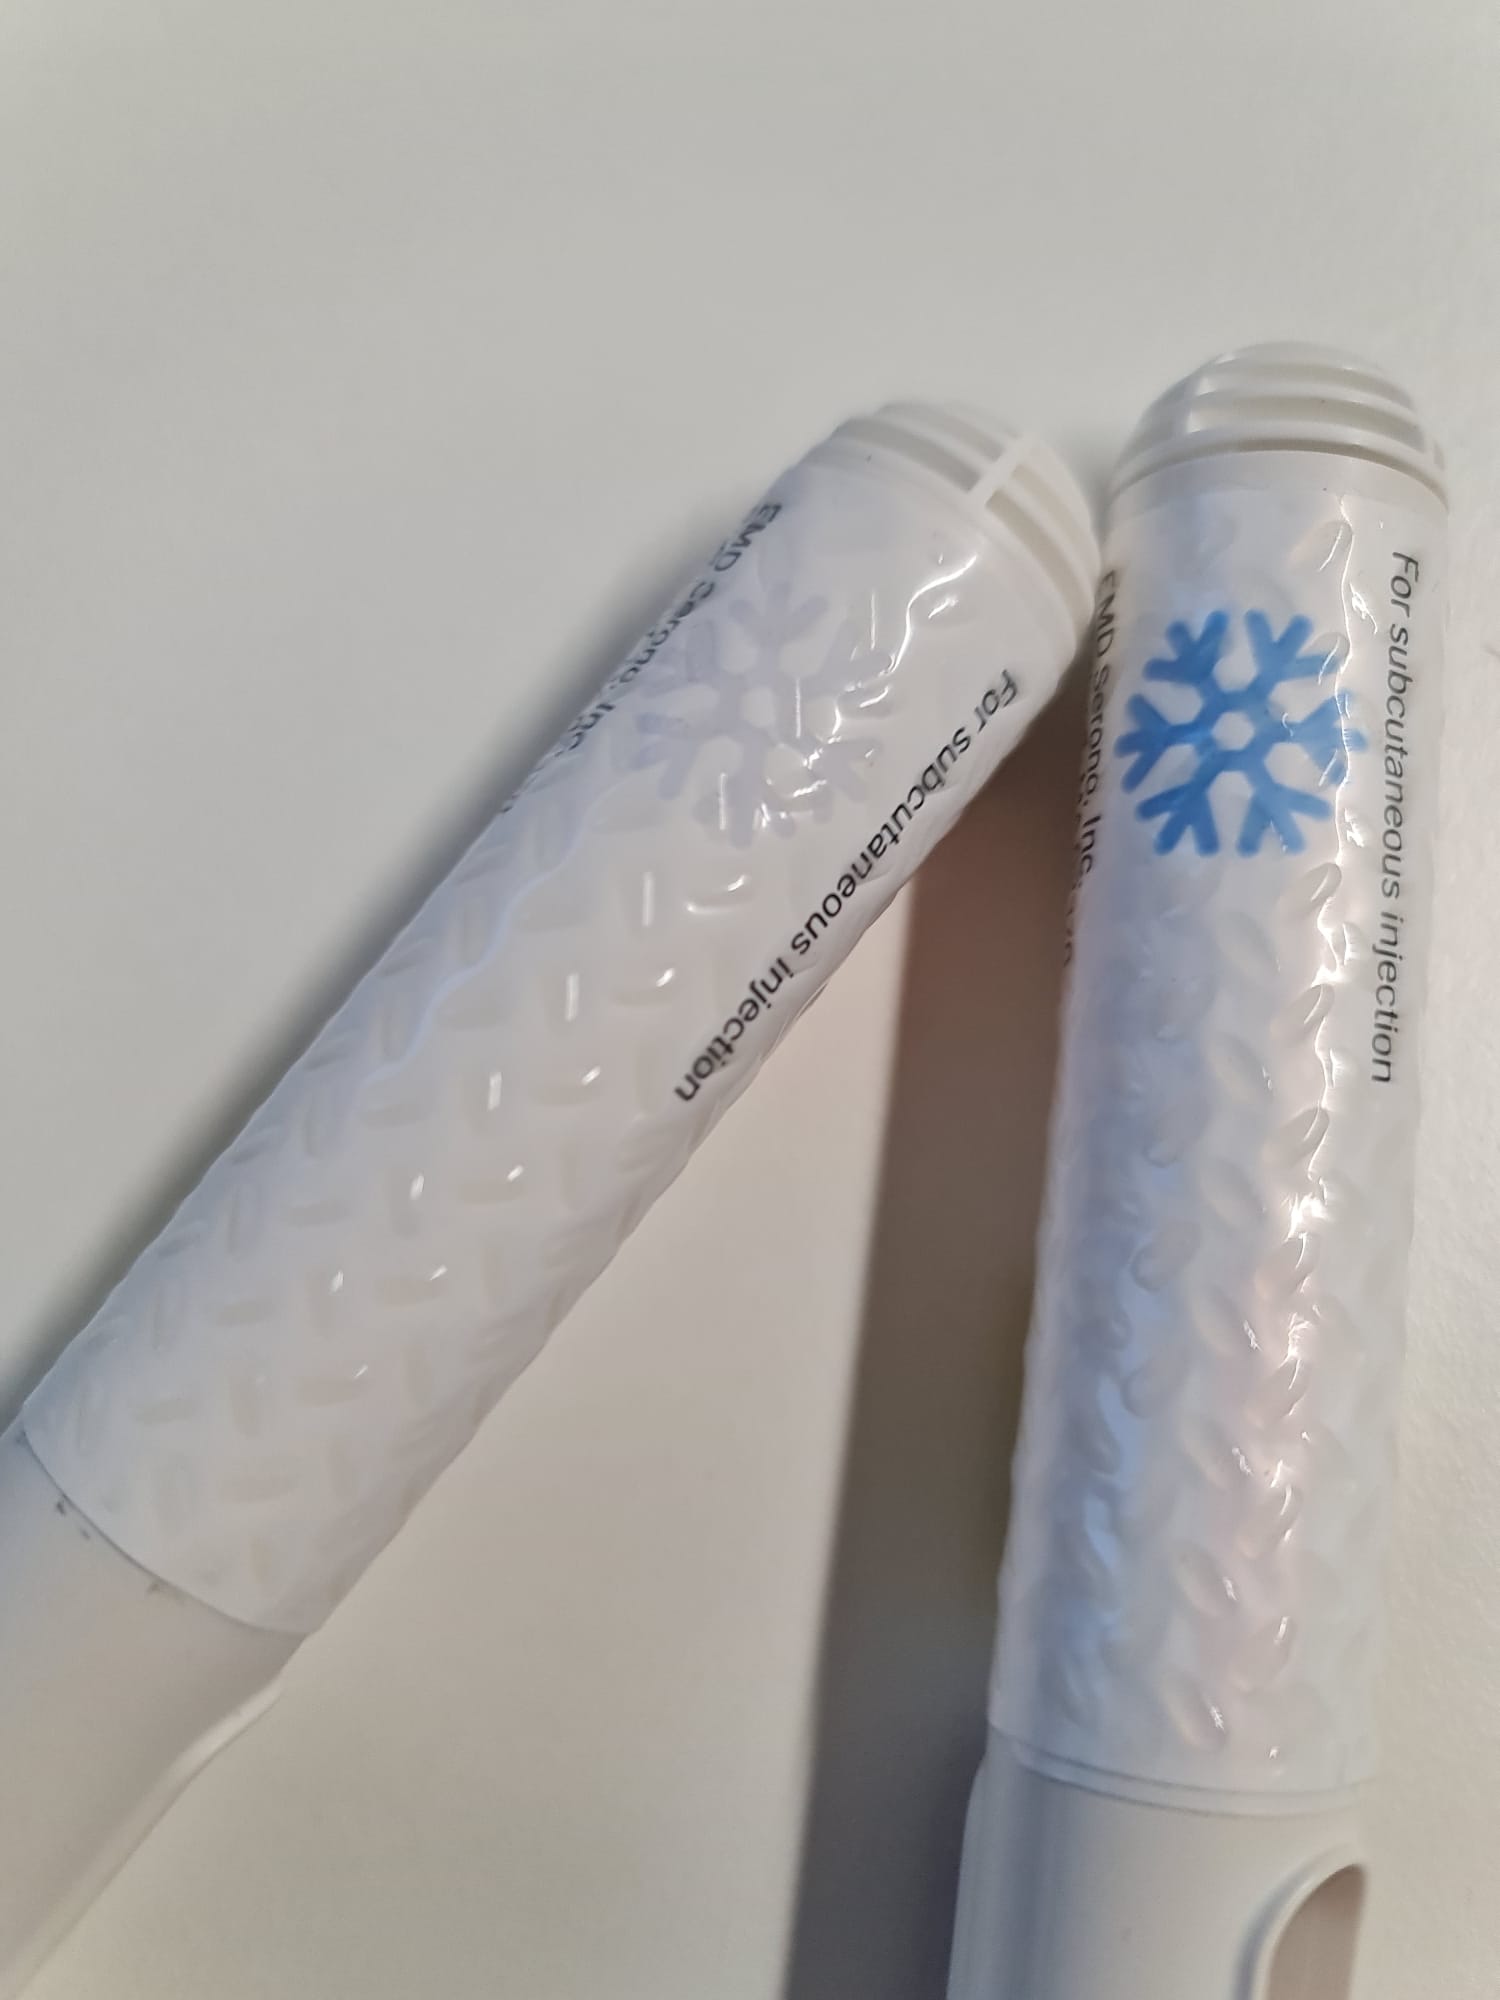 Elementi tattili e inchiostro termocromico per un packaging inclusivo e universale